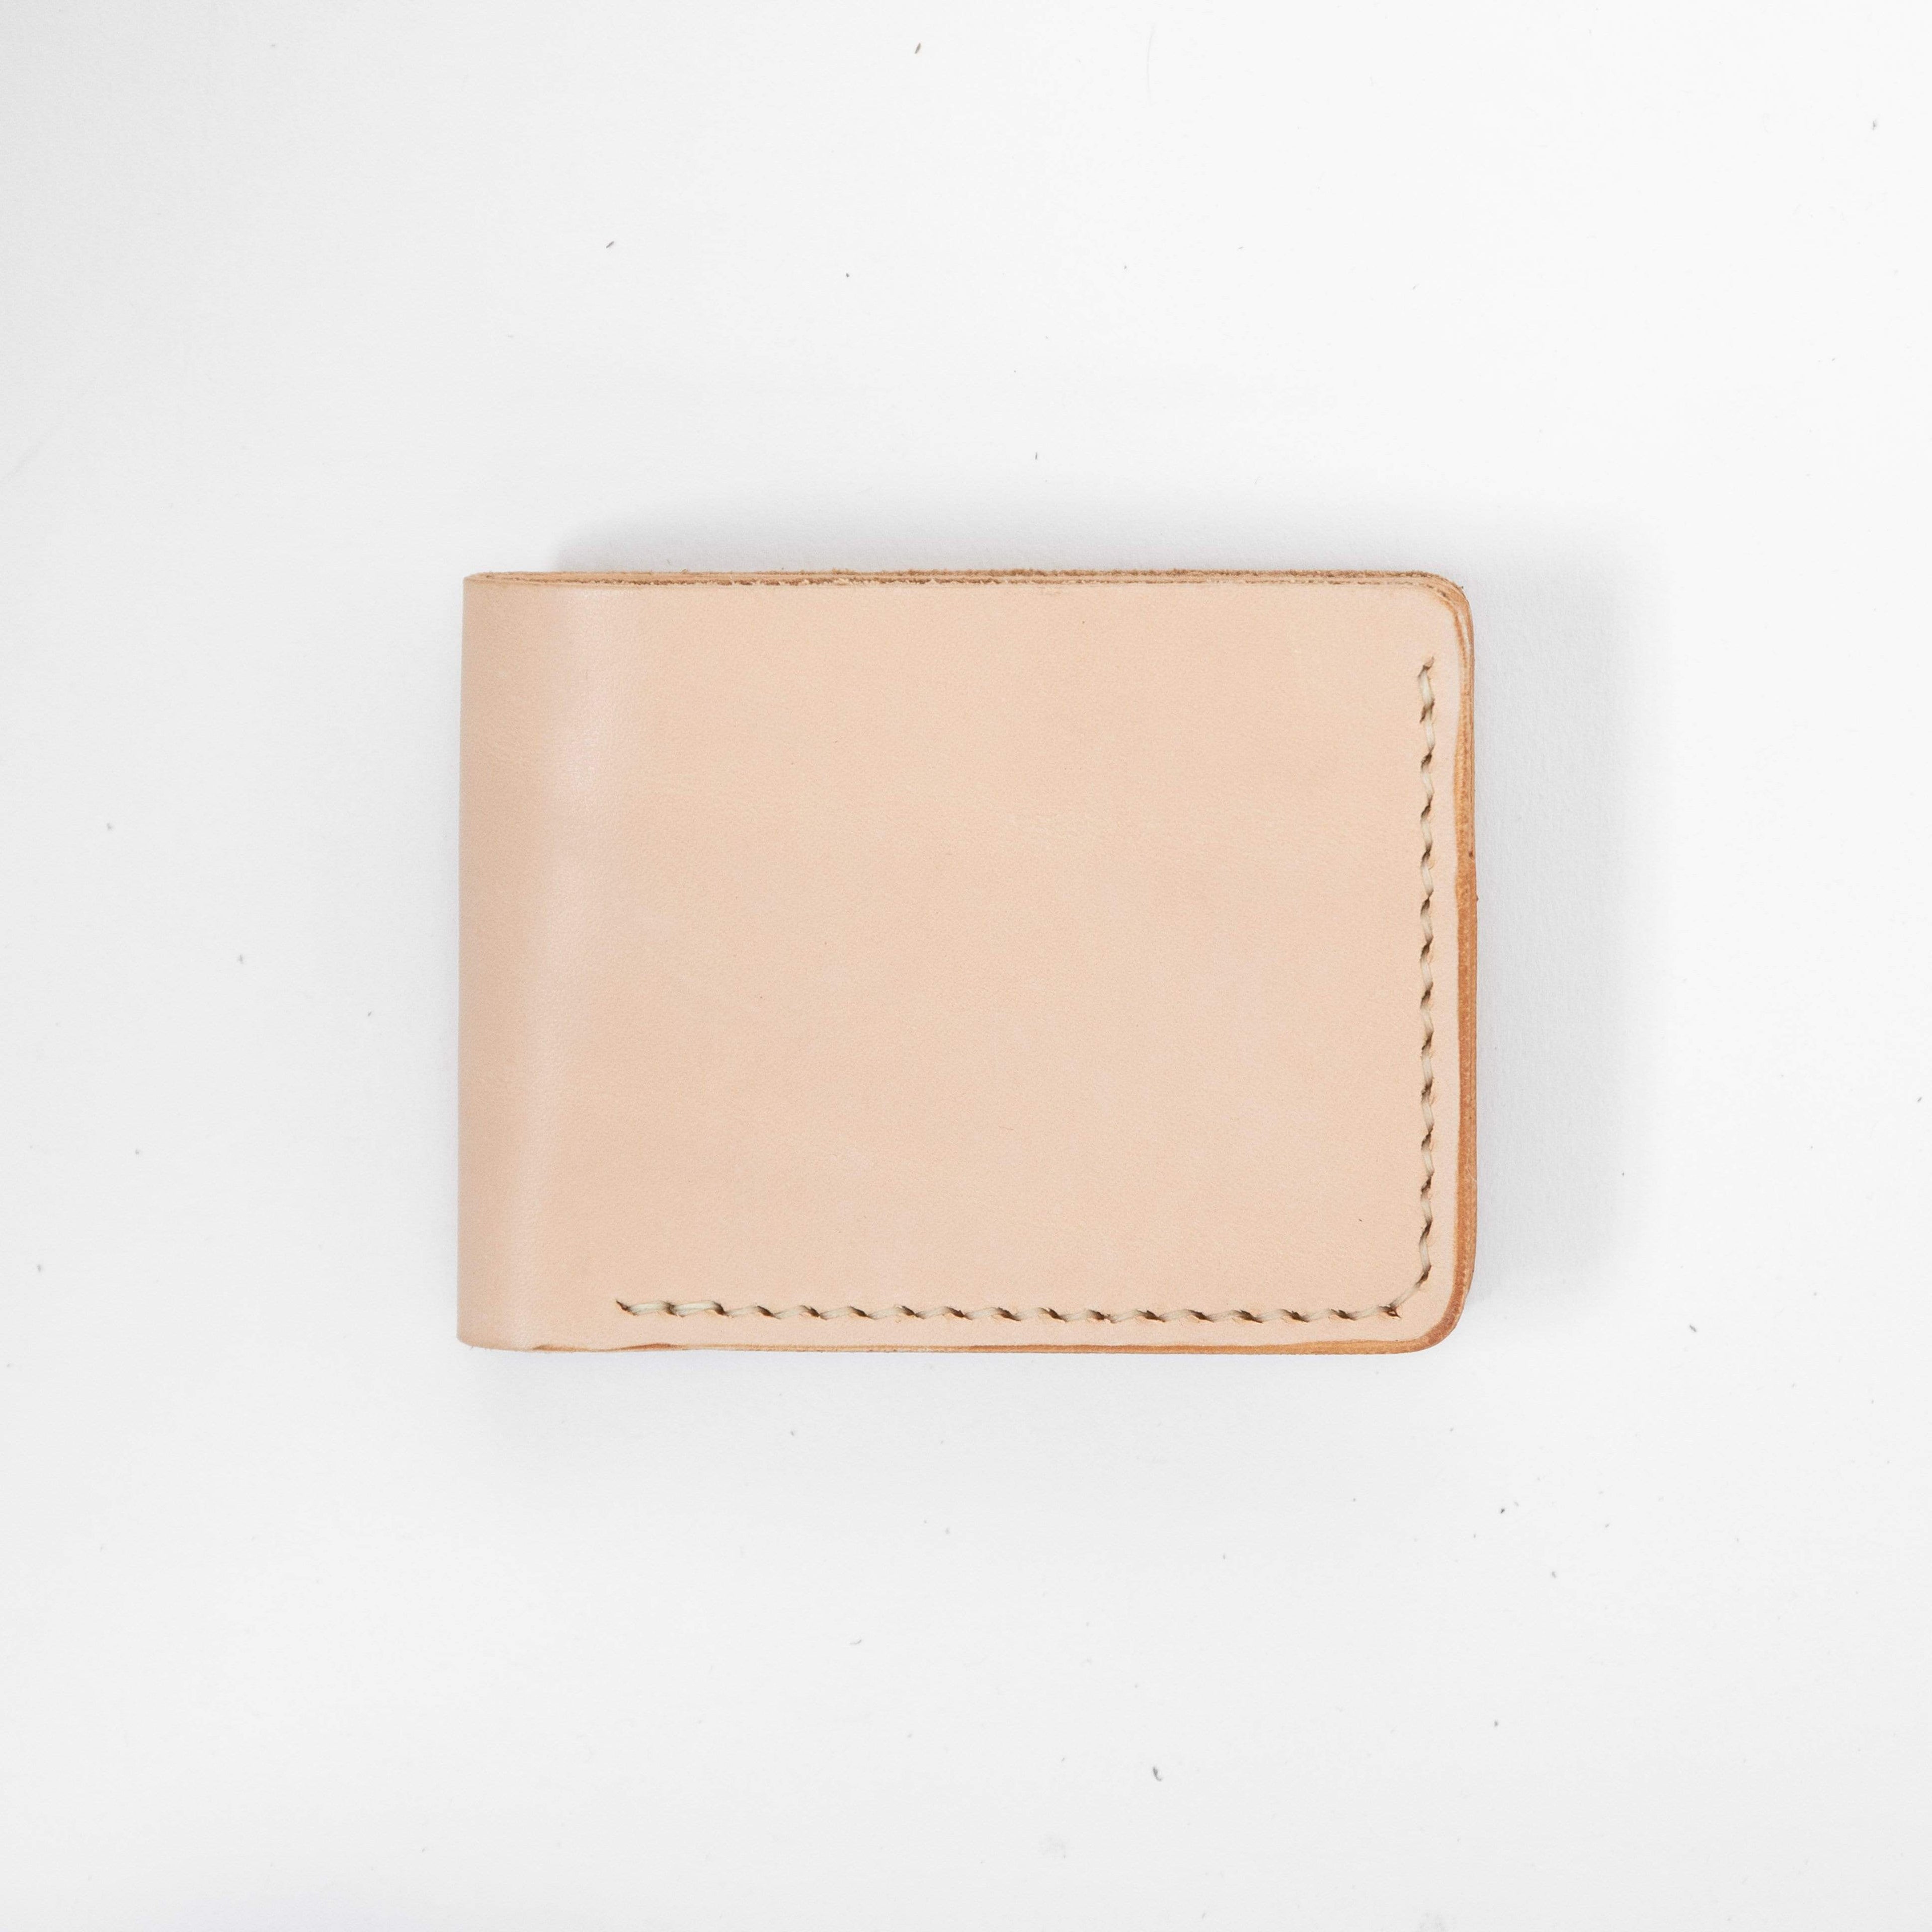 Bi-Fold Vachetta Leather Wallet